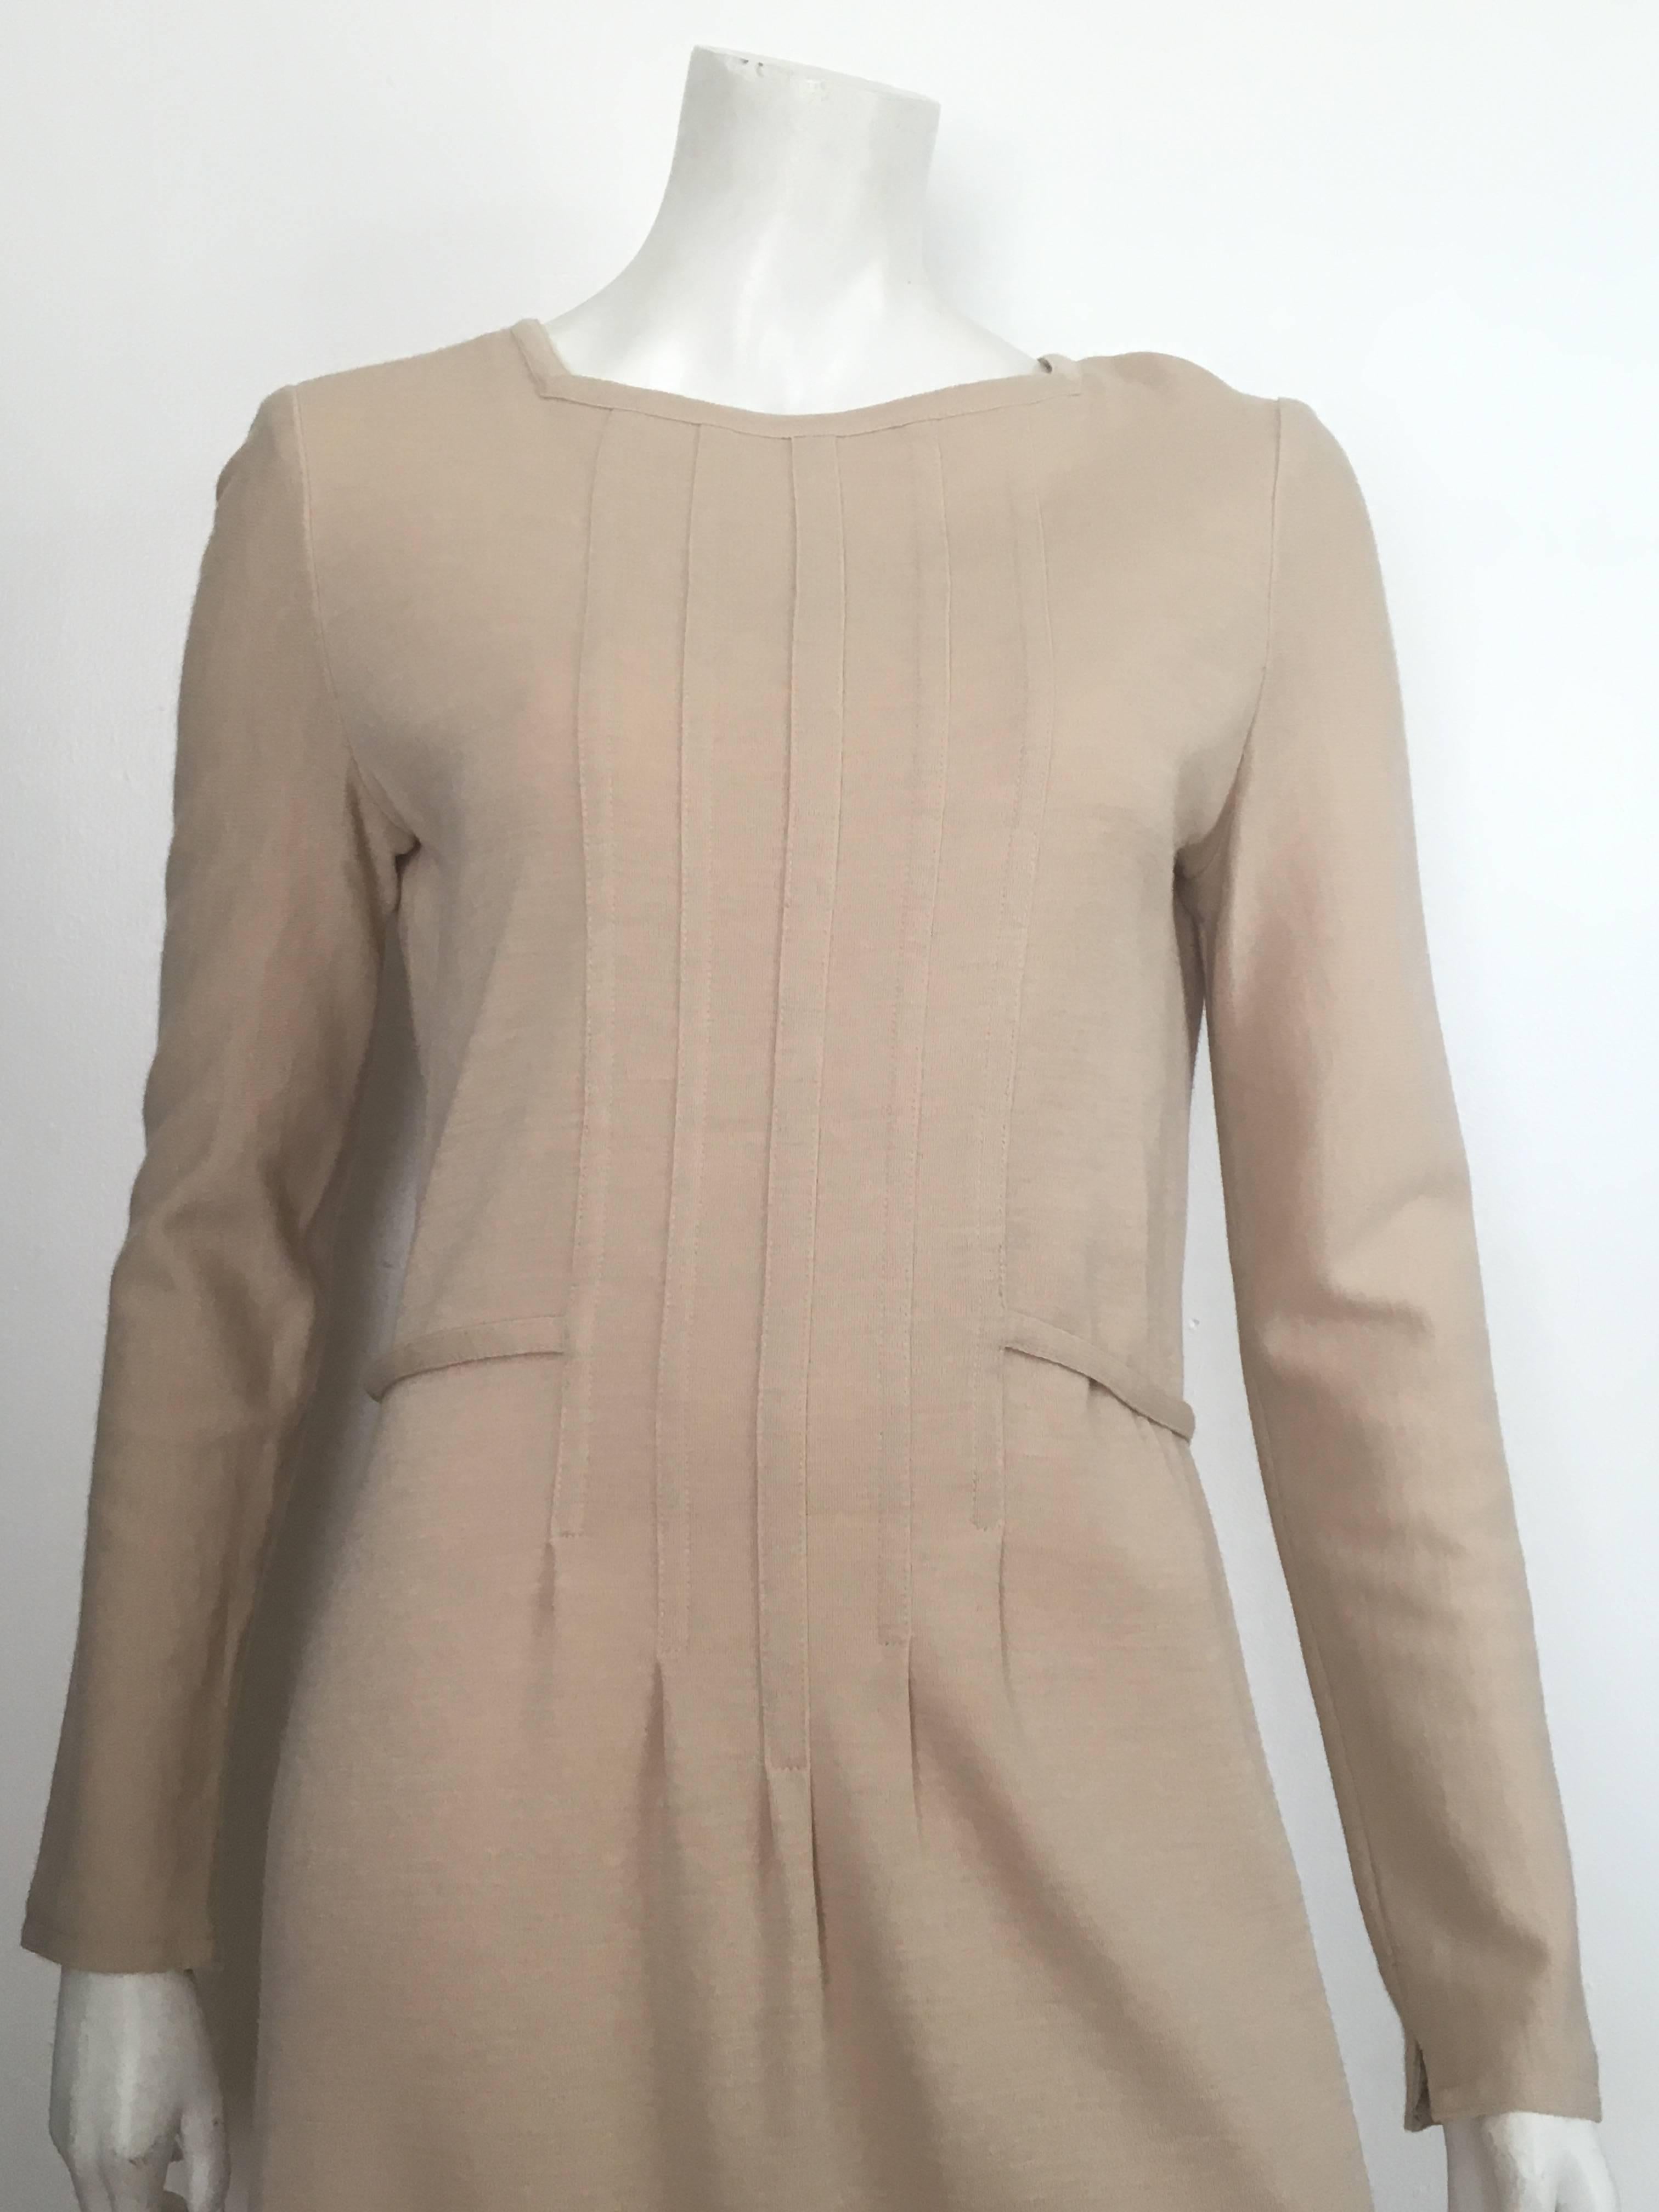 Geoffrey Beene Boutique 1970s Wool Knit Tan Long Sleeve Dress Size 8. For Sale 1